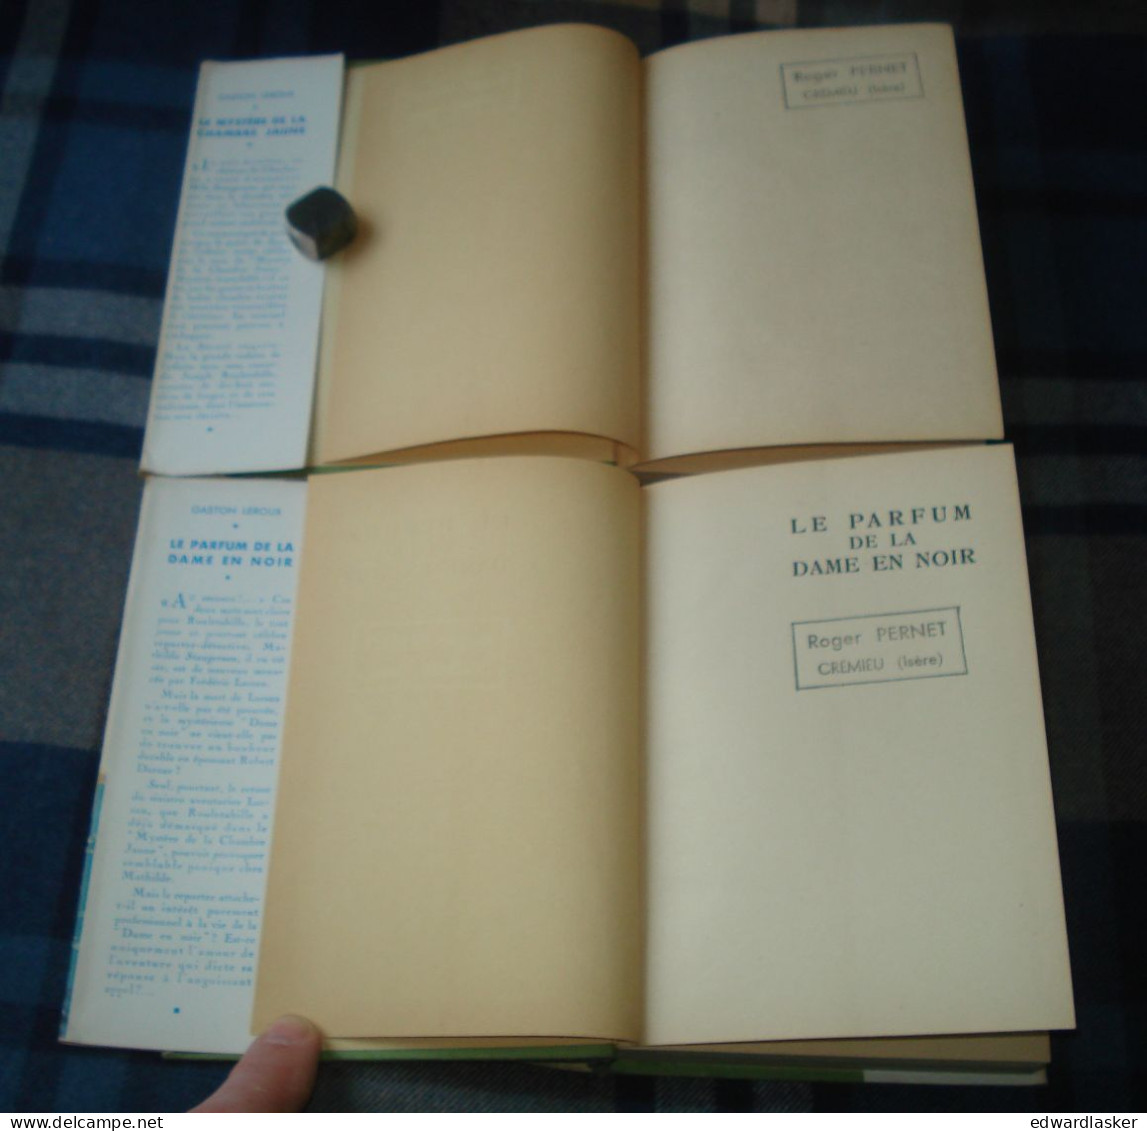 BIBLIOTHEQUE VERTE : Mystère De La Chambre Jaune + Parfum De La Dame En Noir /Gaston Leroux - Jaquette 1953 - Reschofsky - Biblioteca Verde